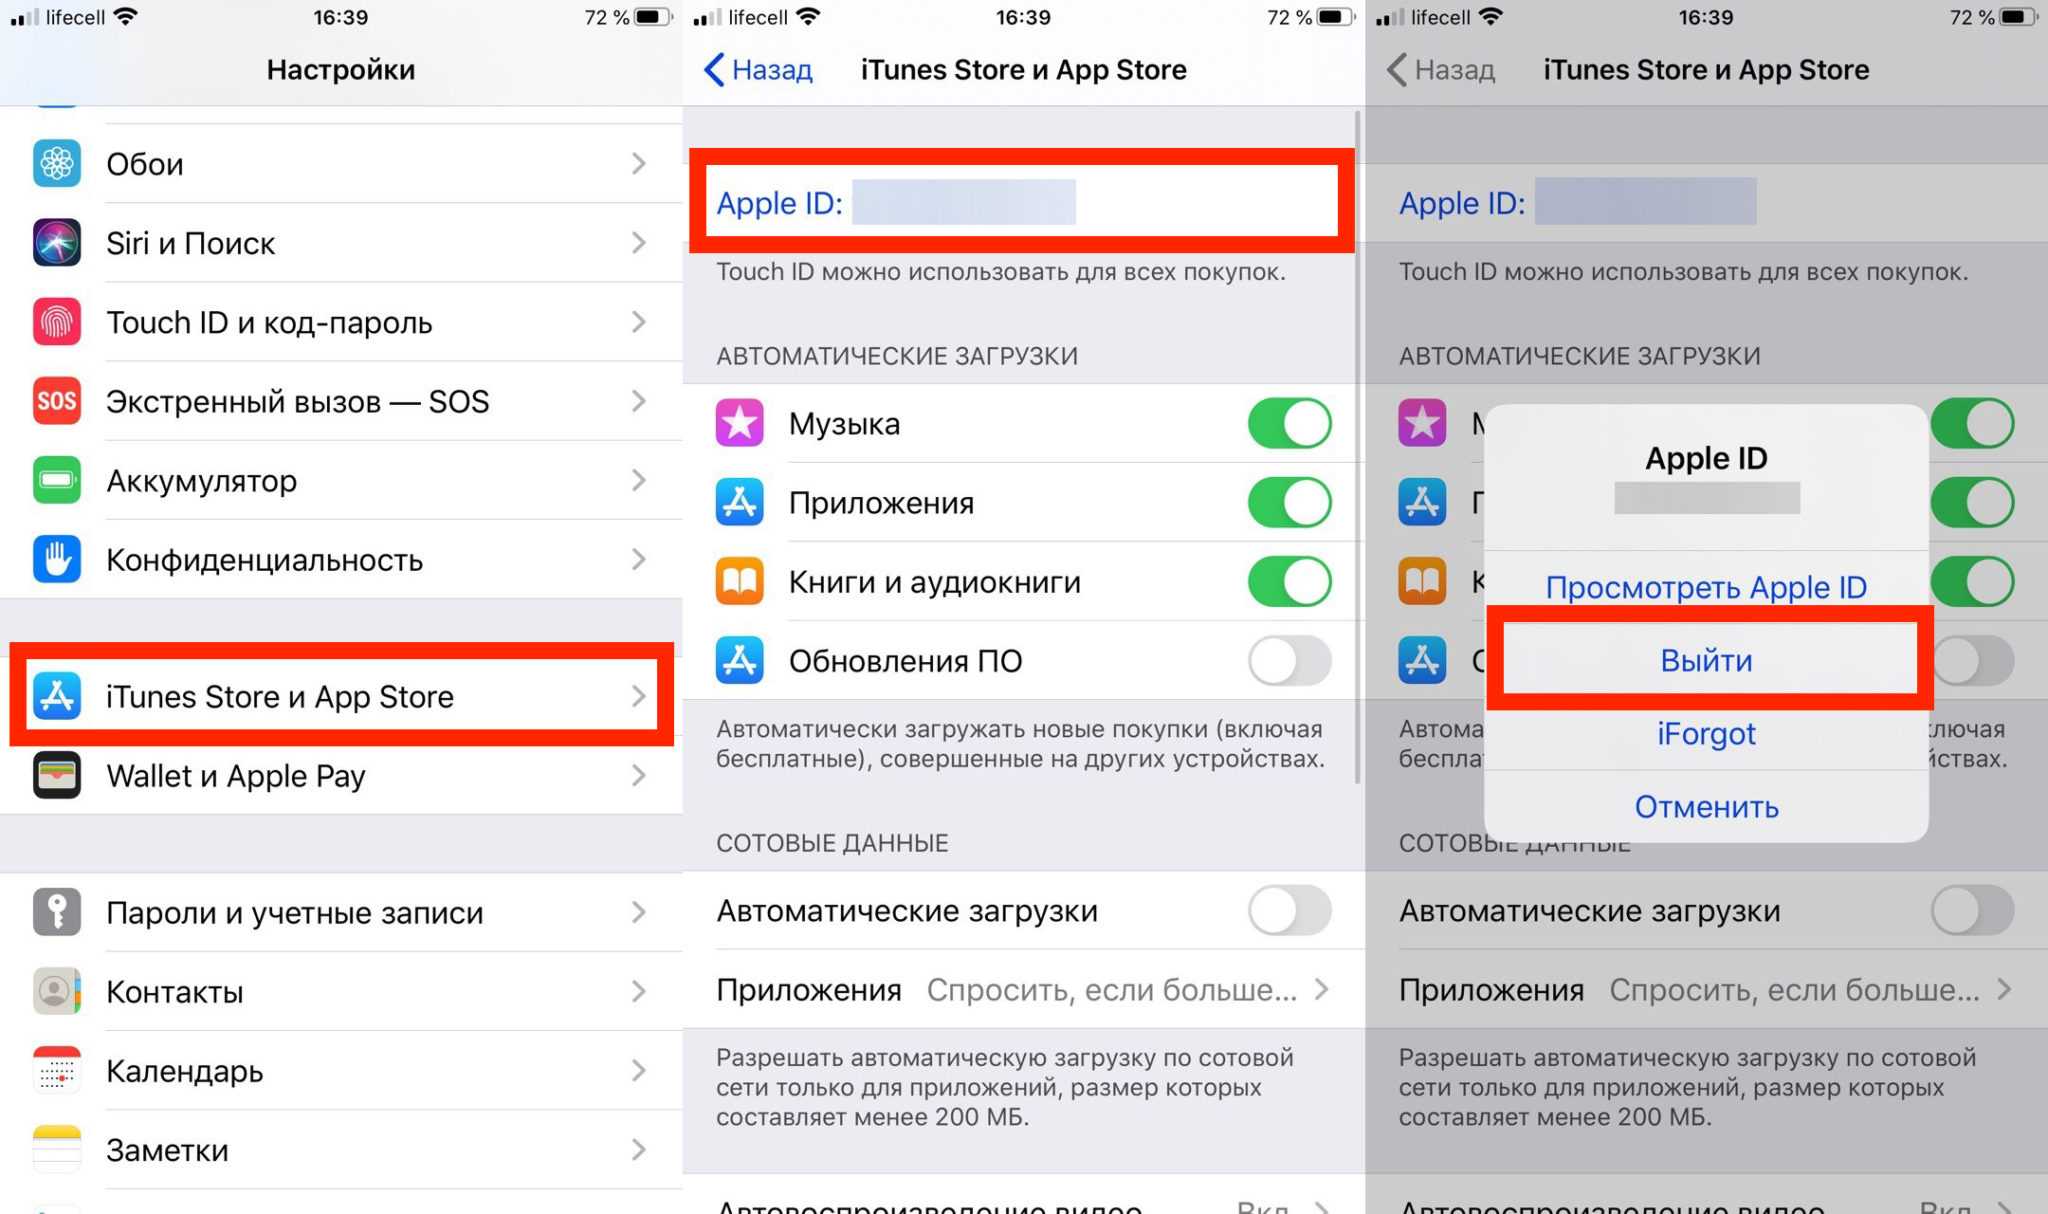 Как разрешить доступ приложению на айфоне - инструкция тарифкин.ру
как разрешить доступ приложению на айфоне - инструкция